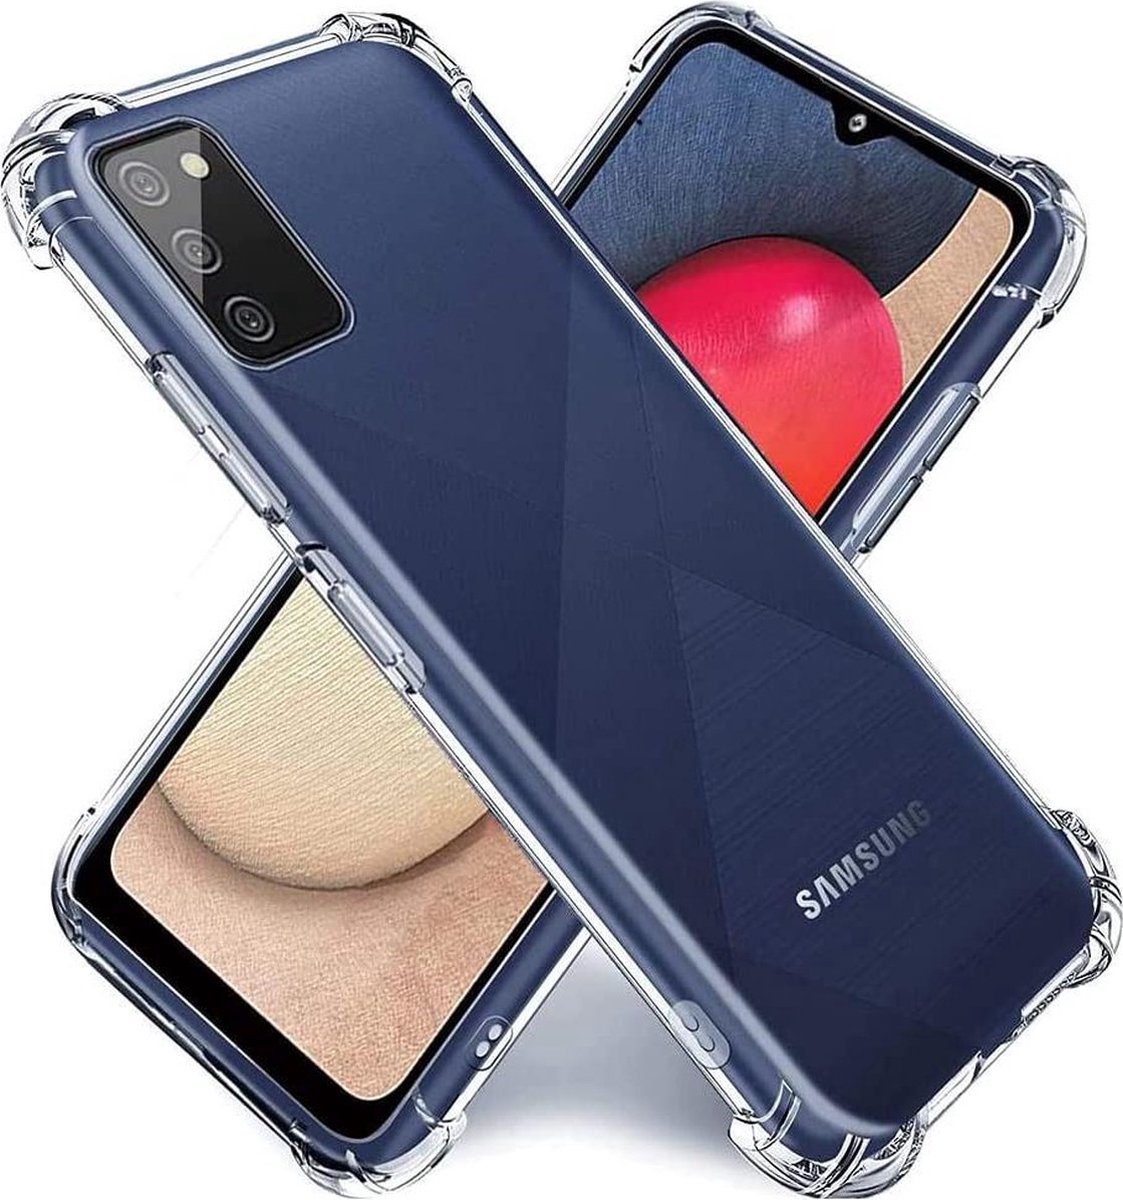 Samsung Galaxy A02s transparant siliconen hoes / achterkant met uitgestoken hoeken / anti shock / doorzichtig